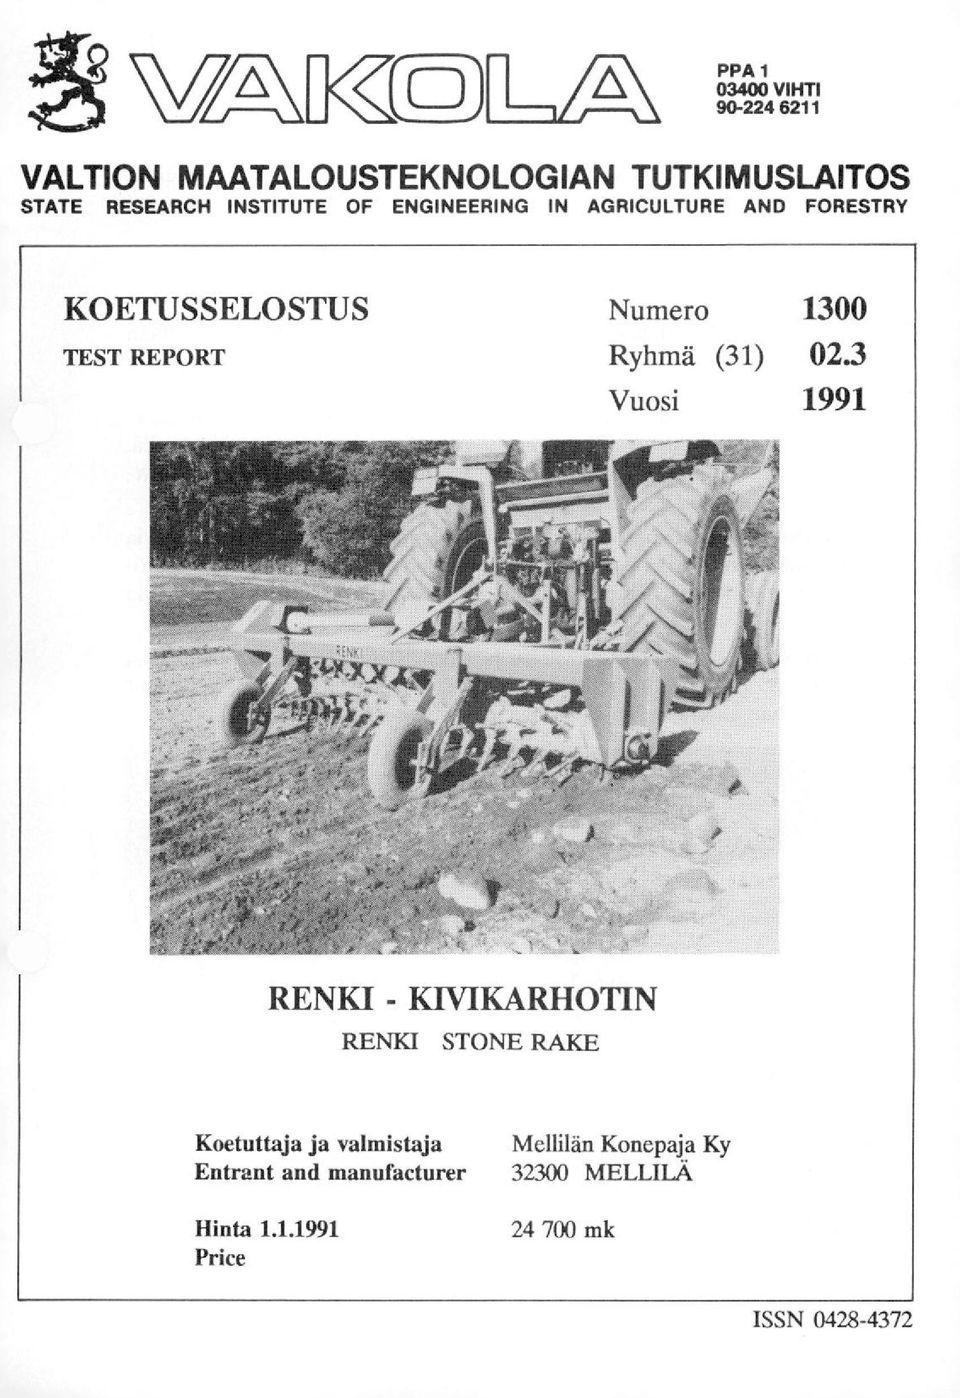 1300 Ryhmä (31) 023 Vuosi 1991 RENKI - KIVIKARHOTIN RENKI STONE RAICE Koetuttaja ja valmistaja